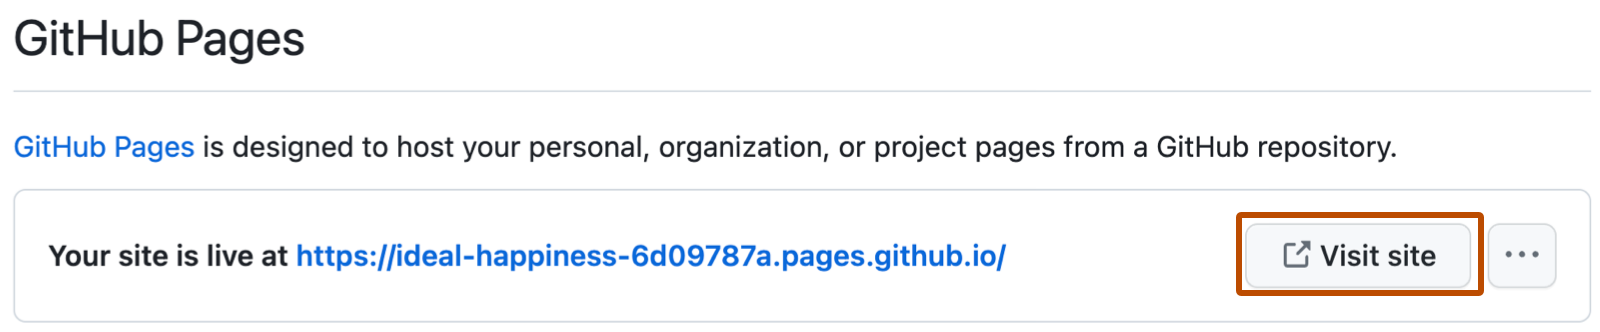 Captura de pantalla de un mensaje de confirmación para GitHub Pages que muestra la dirección URL del sitio. A la derecha de la dirección URL larga de color azul, aparece un botón con la etiqueta "Visitar sitio" en color naranja oscuro.